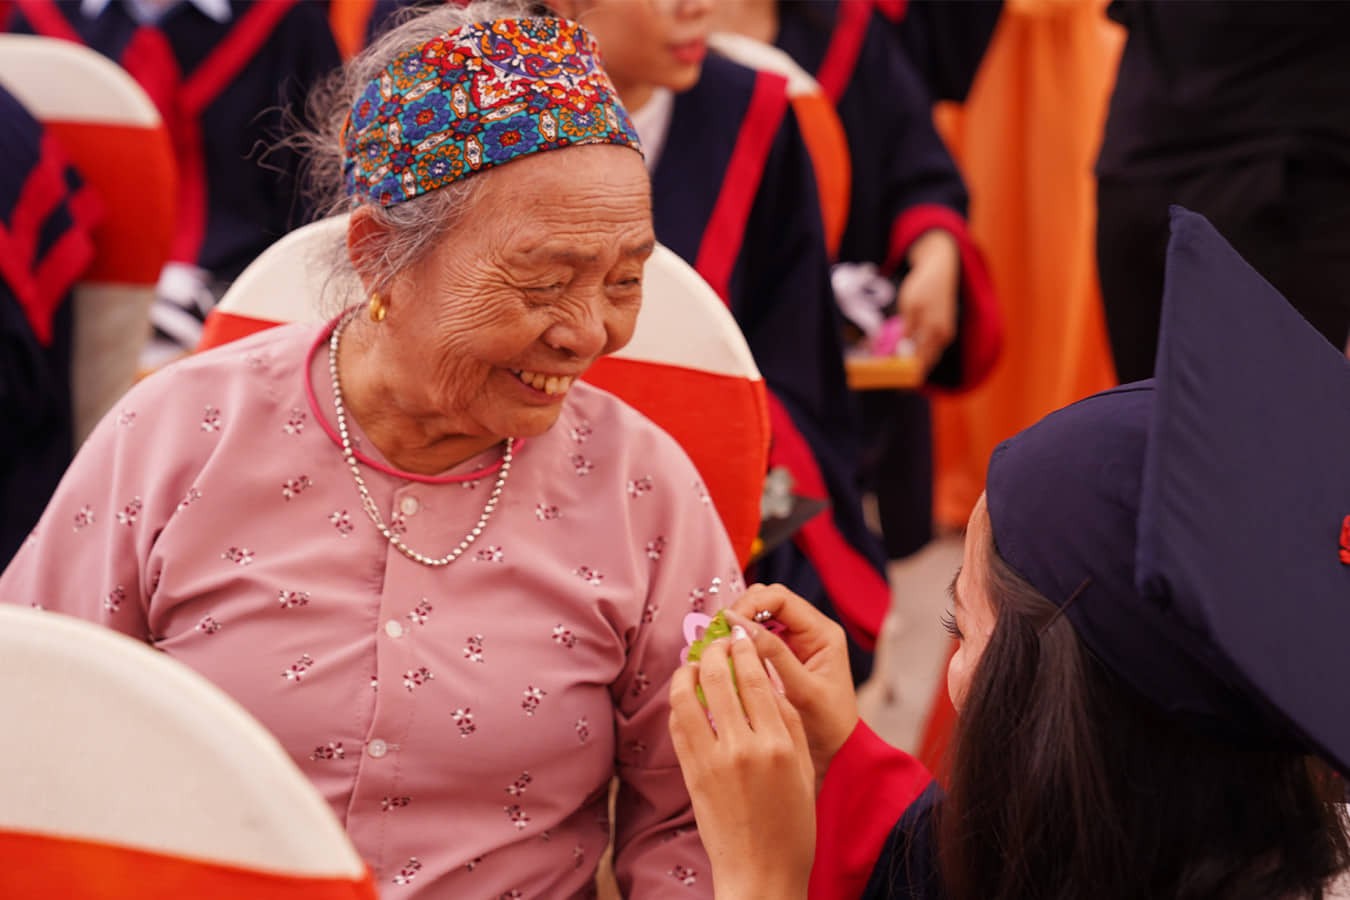 Câu chuyện xúc động bà nội 83 tuổi vượt gần 2000km dự lễ tốt nghiệp đại học của cháu gái - ảnh 2